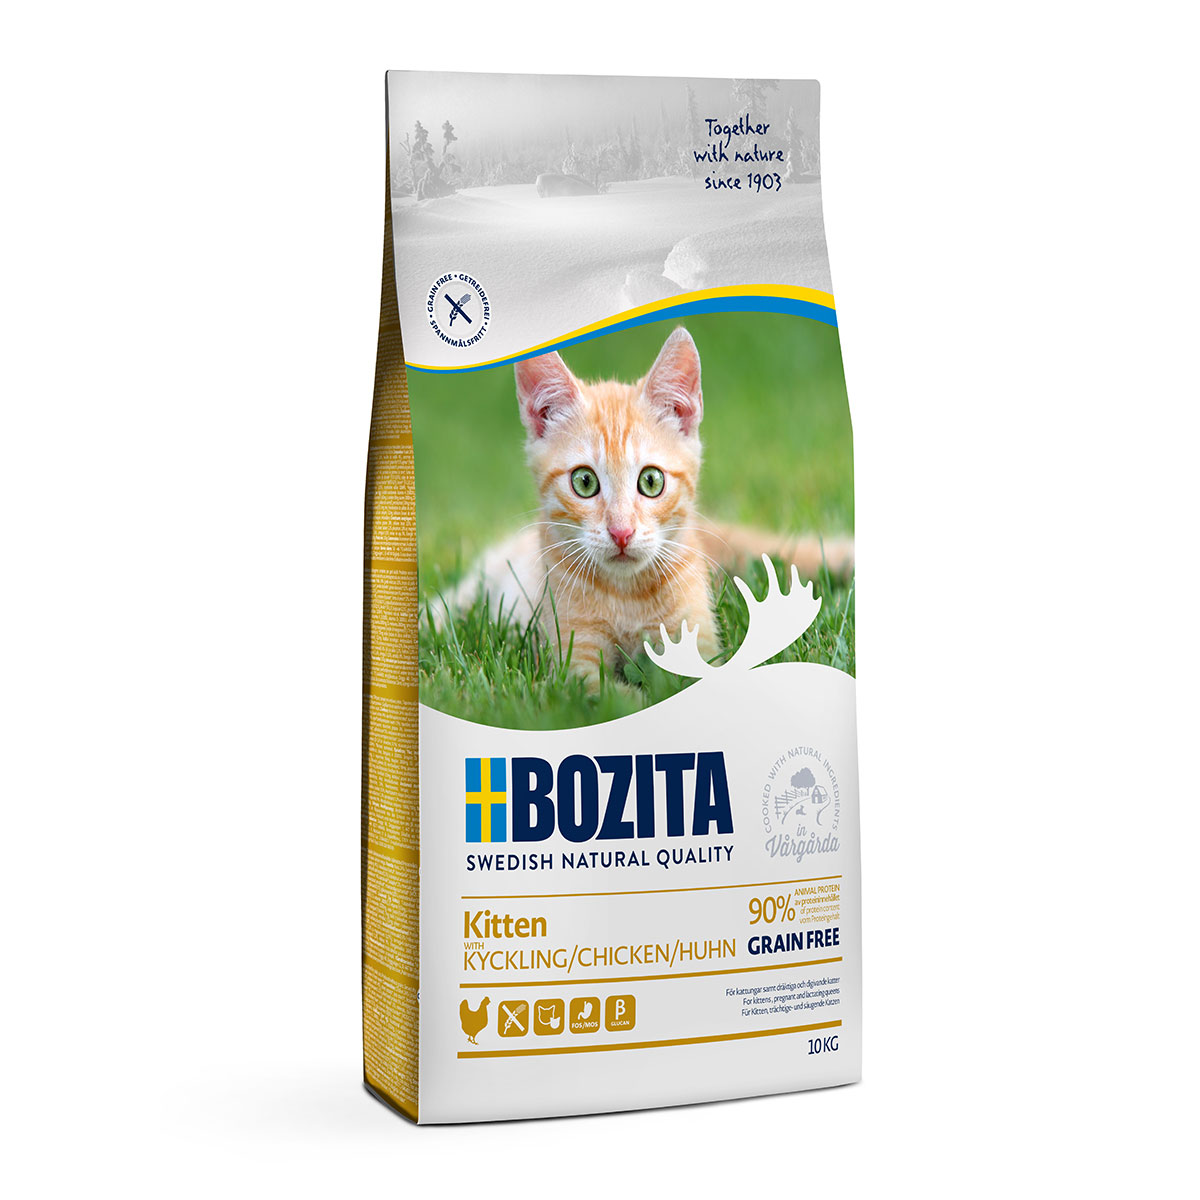 Bozita Kitten Grain free mit Huhn 10kg von Bozita